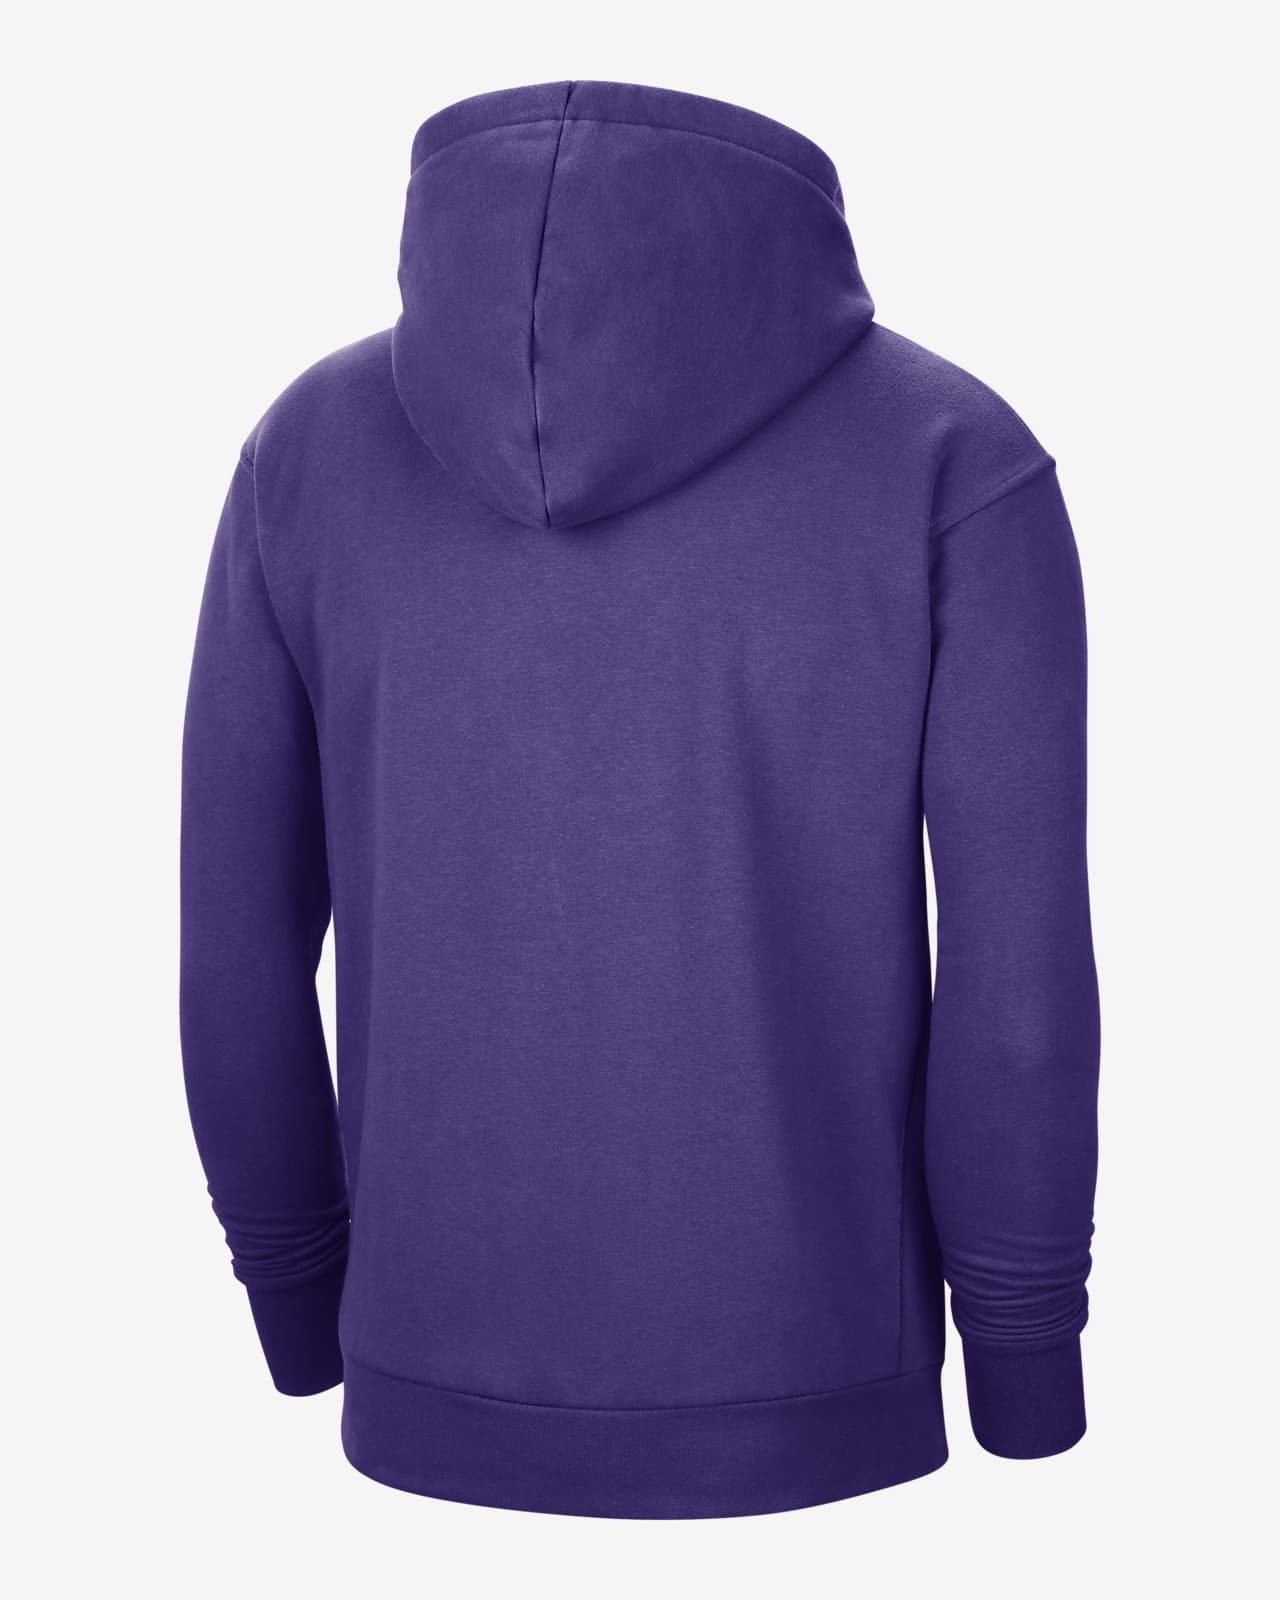 lakers hoodie nike black